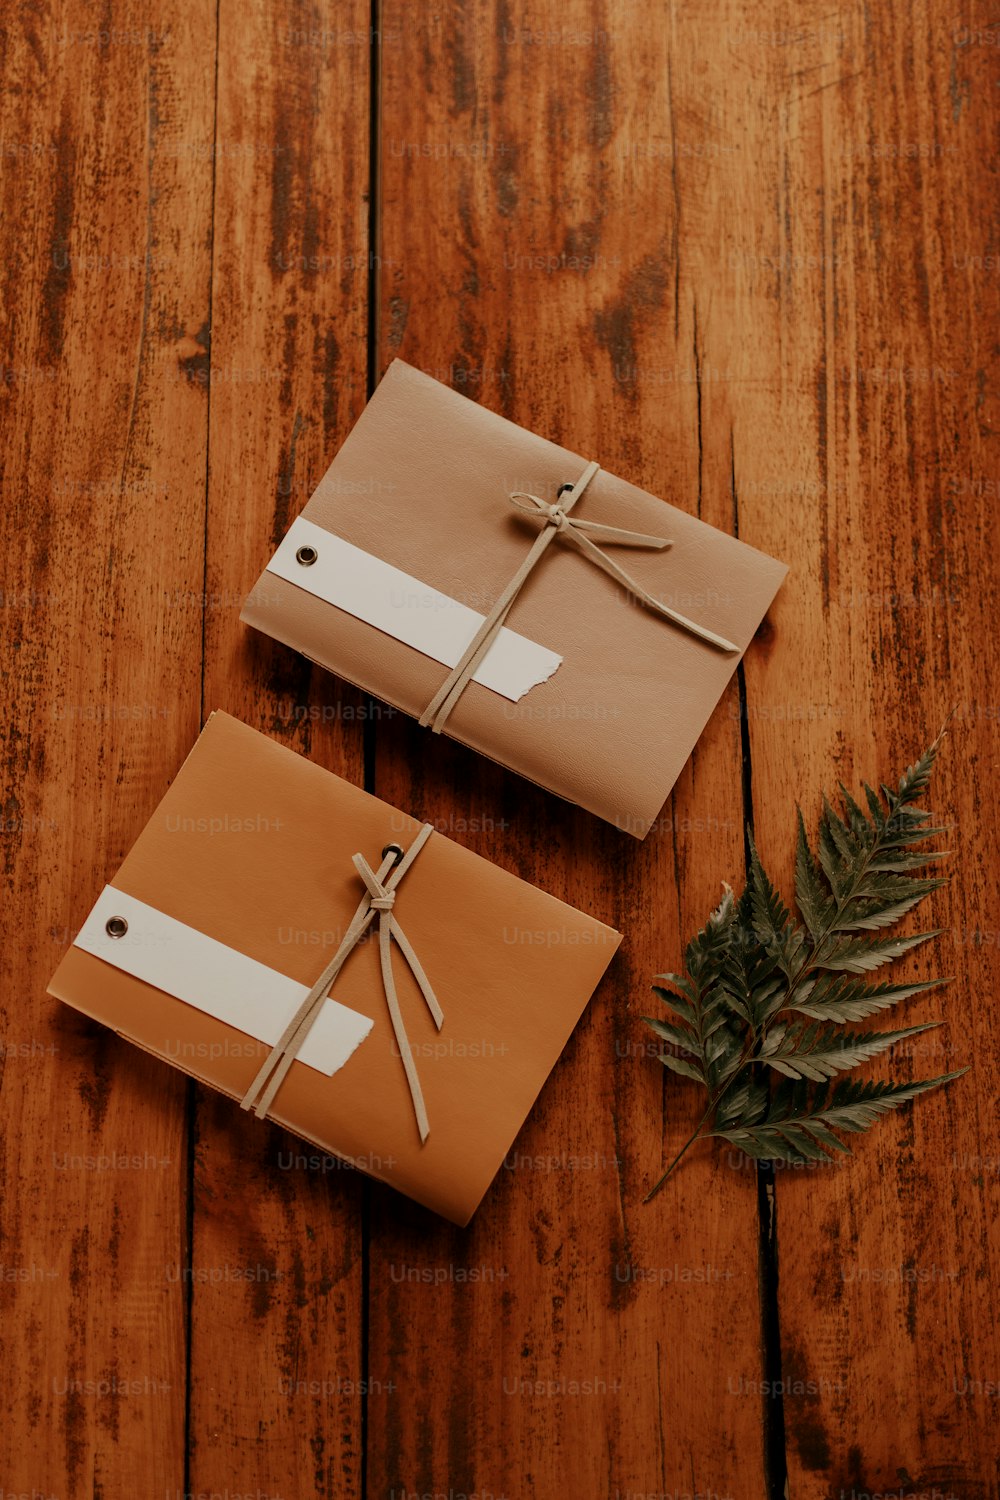 Dos regalos envueltos en una mesa de madera con una planta